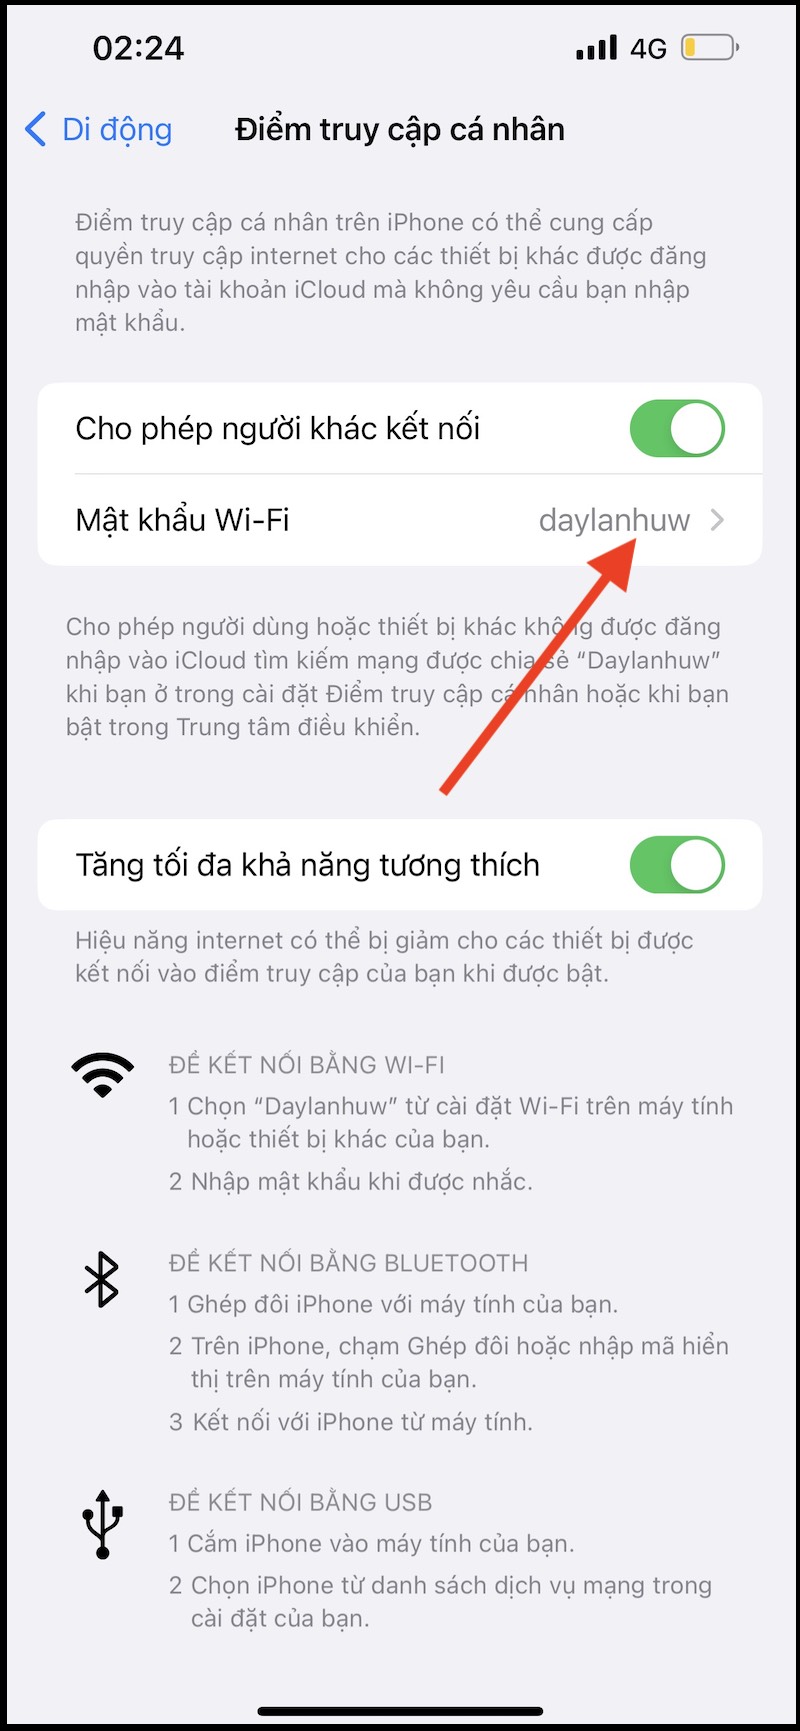 Chọn mục Mật khẩu Wi-Fi